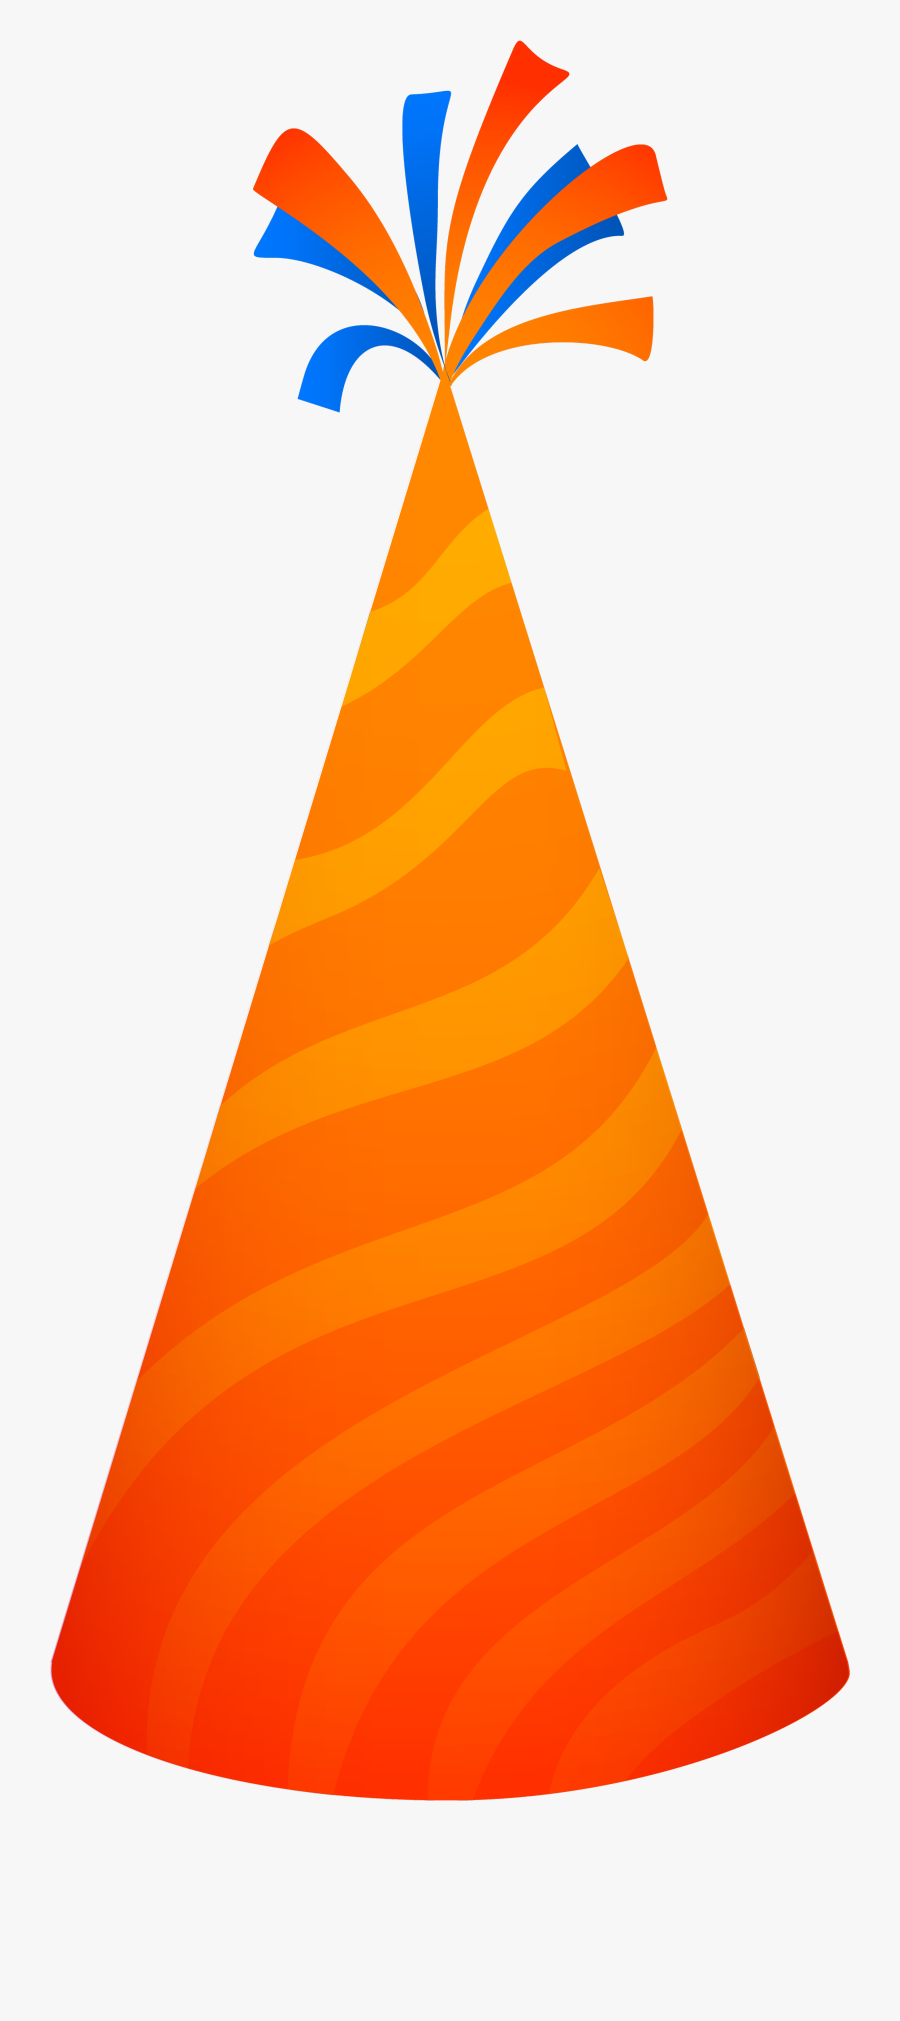 Party Hat Png Image - Orange Party Hat Png, Transparent Clipart